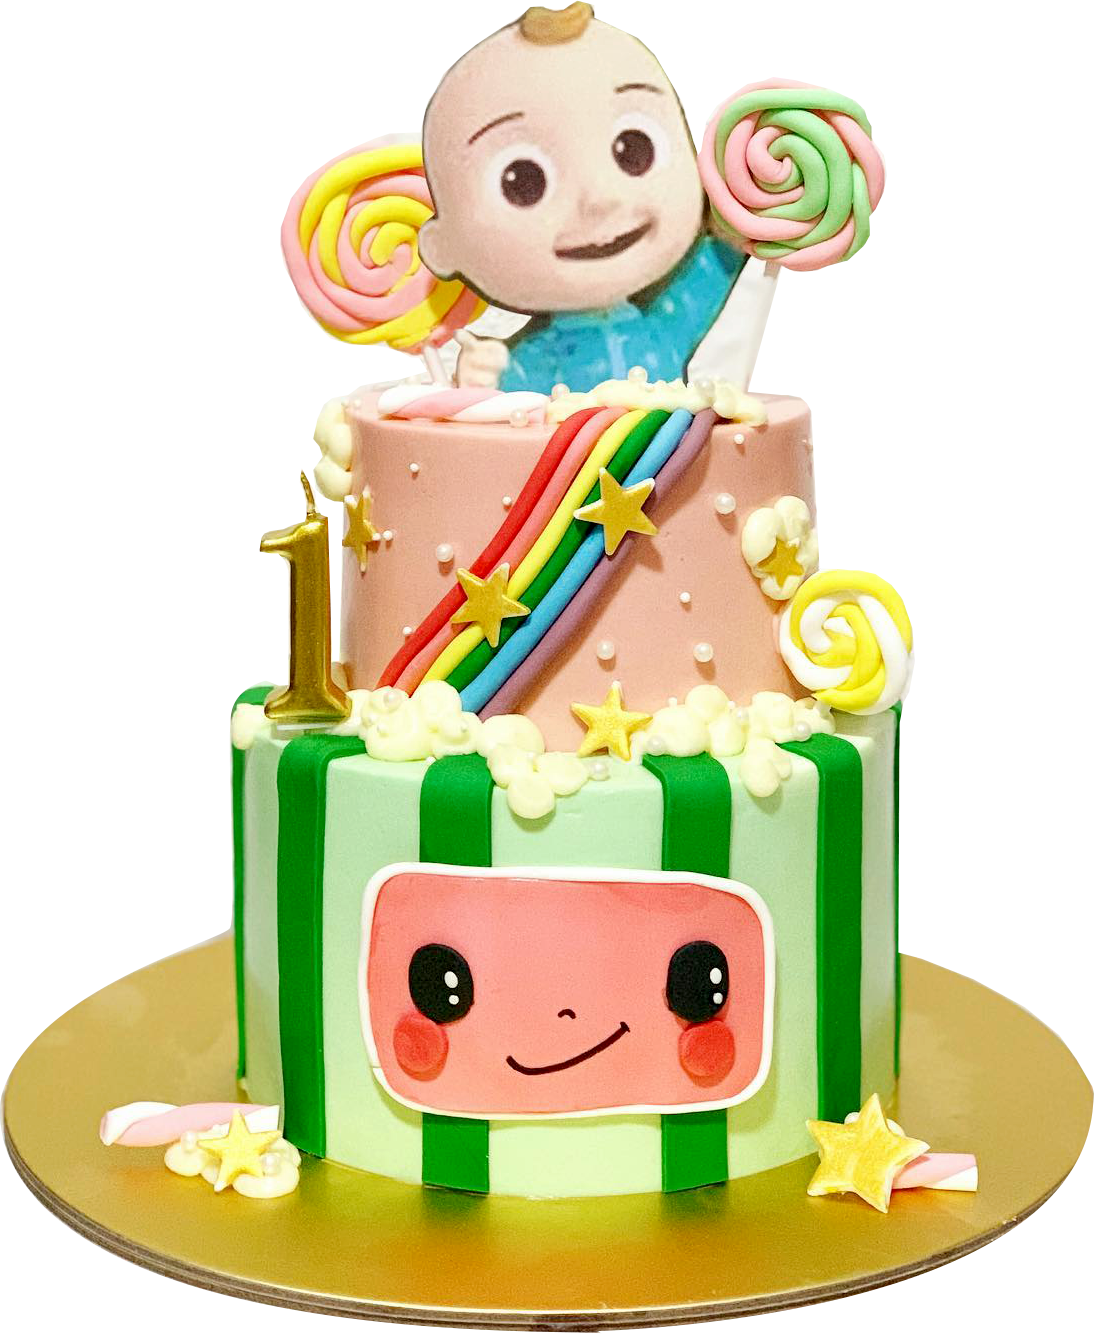 Cocomelon Birthday Cake : Cocomelon Fondant Cake Baby Boy 1st Birthday Party 2nd Birthday Party ...